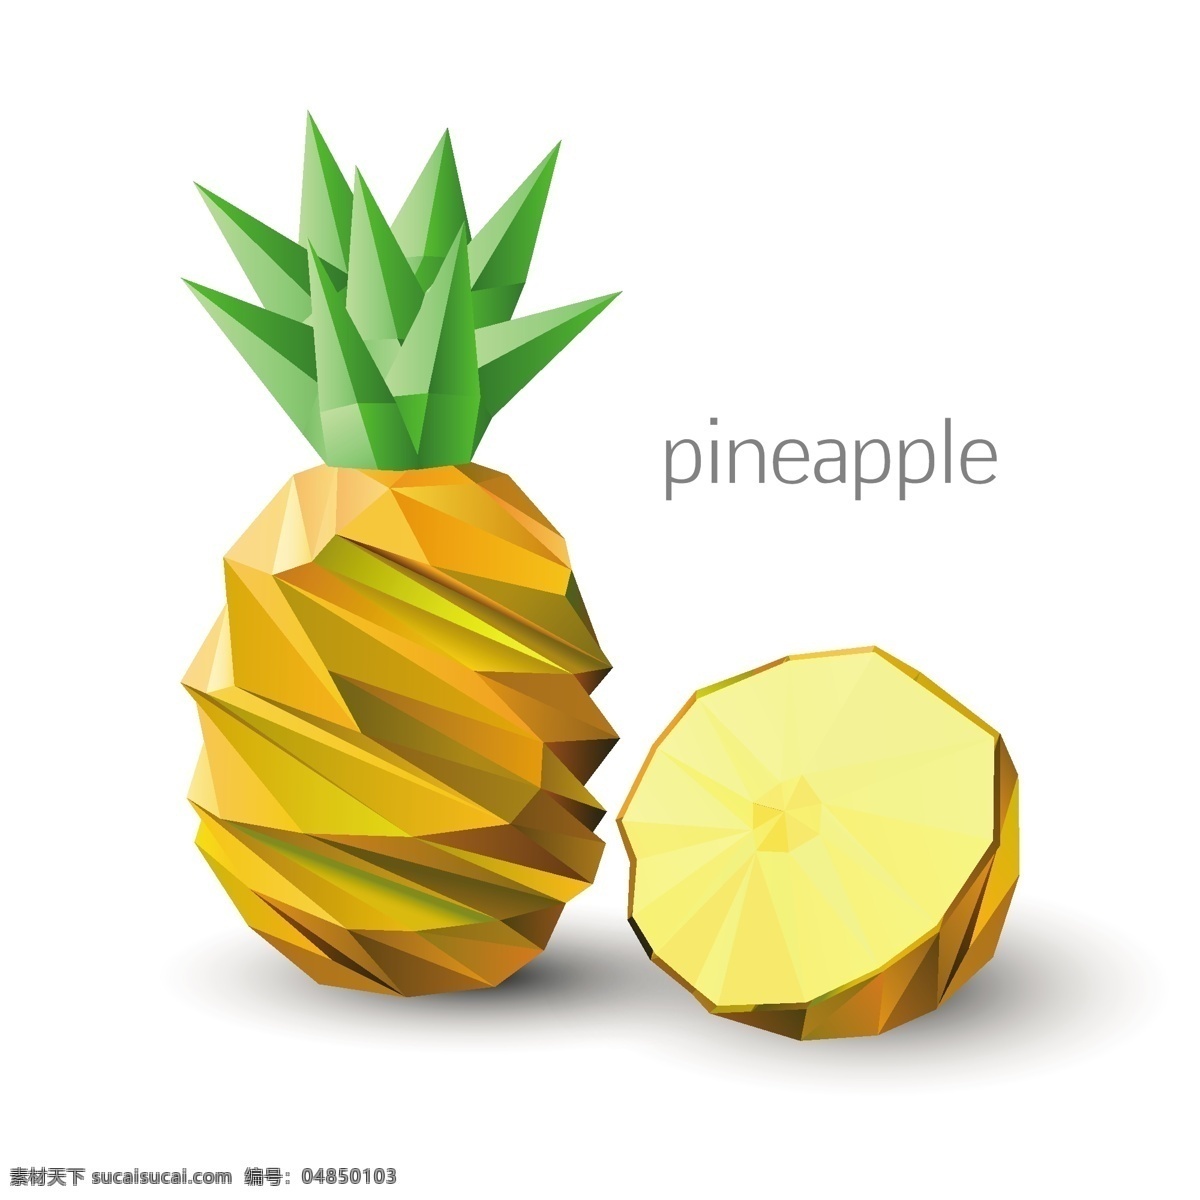 创意水果菠萝 创意水果 菠萝 卡通水果 矢量水果 多边形水果 三角形水果 生活百科 矢量素材 白色